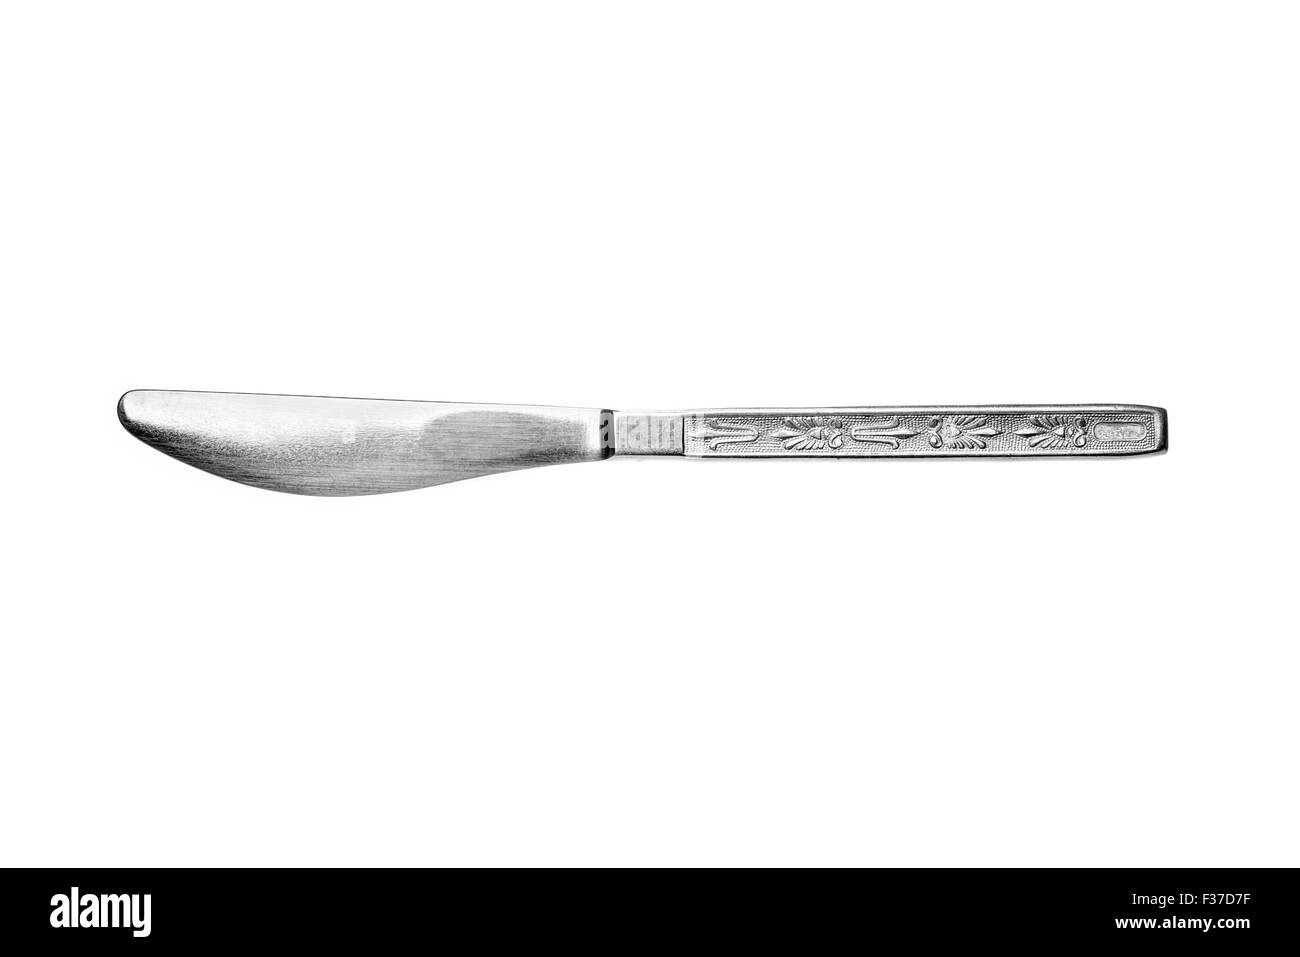 Un style soviétique inoxydable métallique inox couteau de table avec décors isolé sur fond blanc Banque D'Images